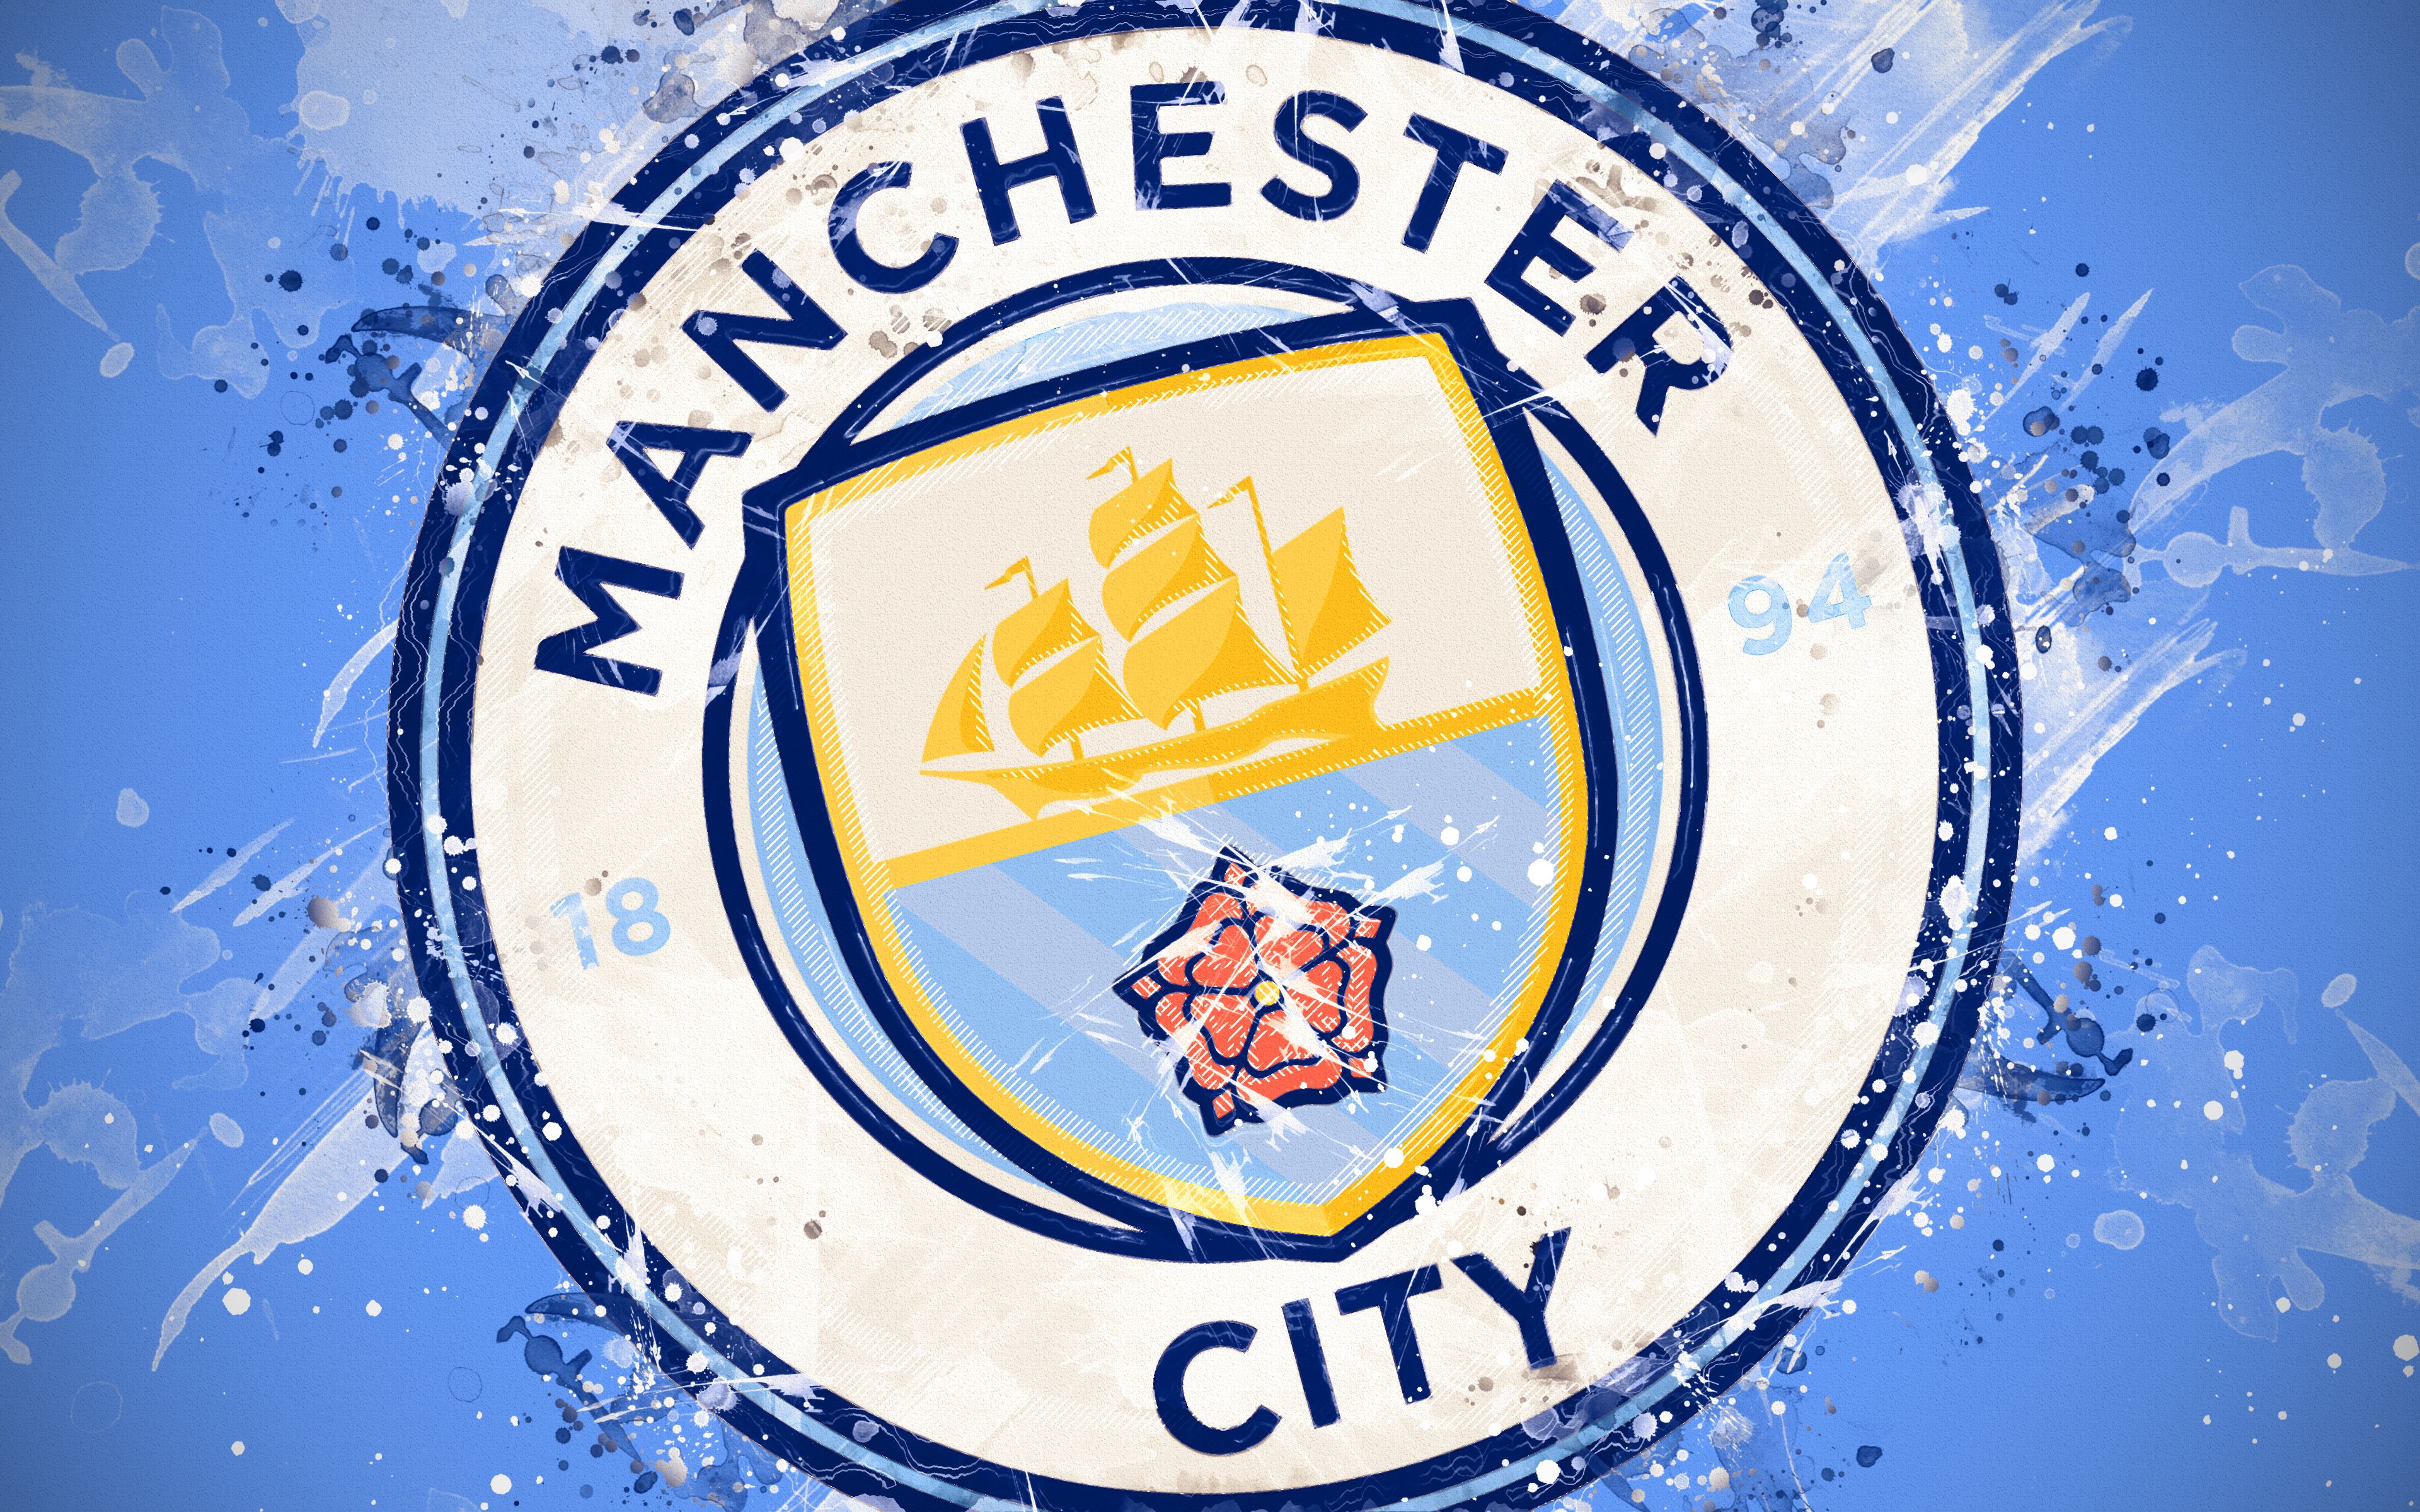 Manchester City FC, wallpapers: Hãy thể hiện tình yêu của mình với Manchester City FC bằng cách trang trí màn hình của bạn với những hình nền độc đáo và tuyệt đẹp của đội bóng này. Với số lượng lớn các tùy chọn hình nền, bạn chắc chắn sẽ tìm thấy một tấm lý tưởng để phù hợp với phong cách cá nhân của mình.